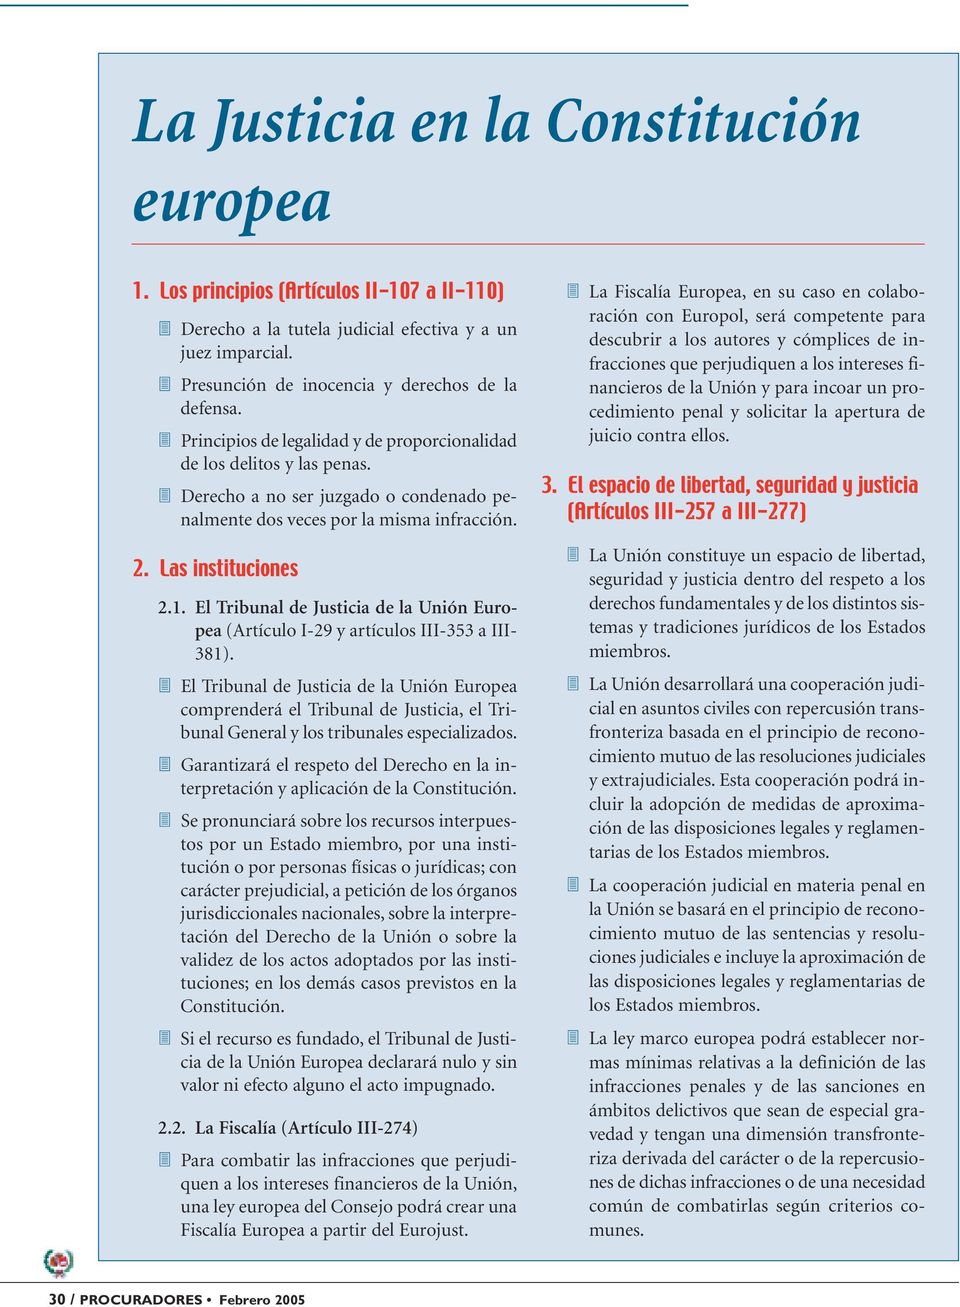 El Tribunal de Justicia de la Unión Europea (Artículo I-29 y artículos III-353 a III- 381).